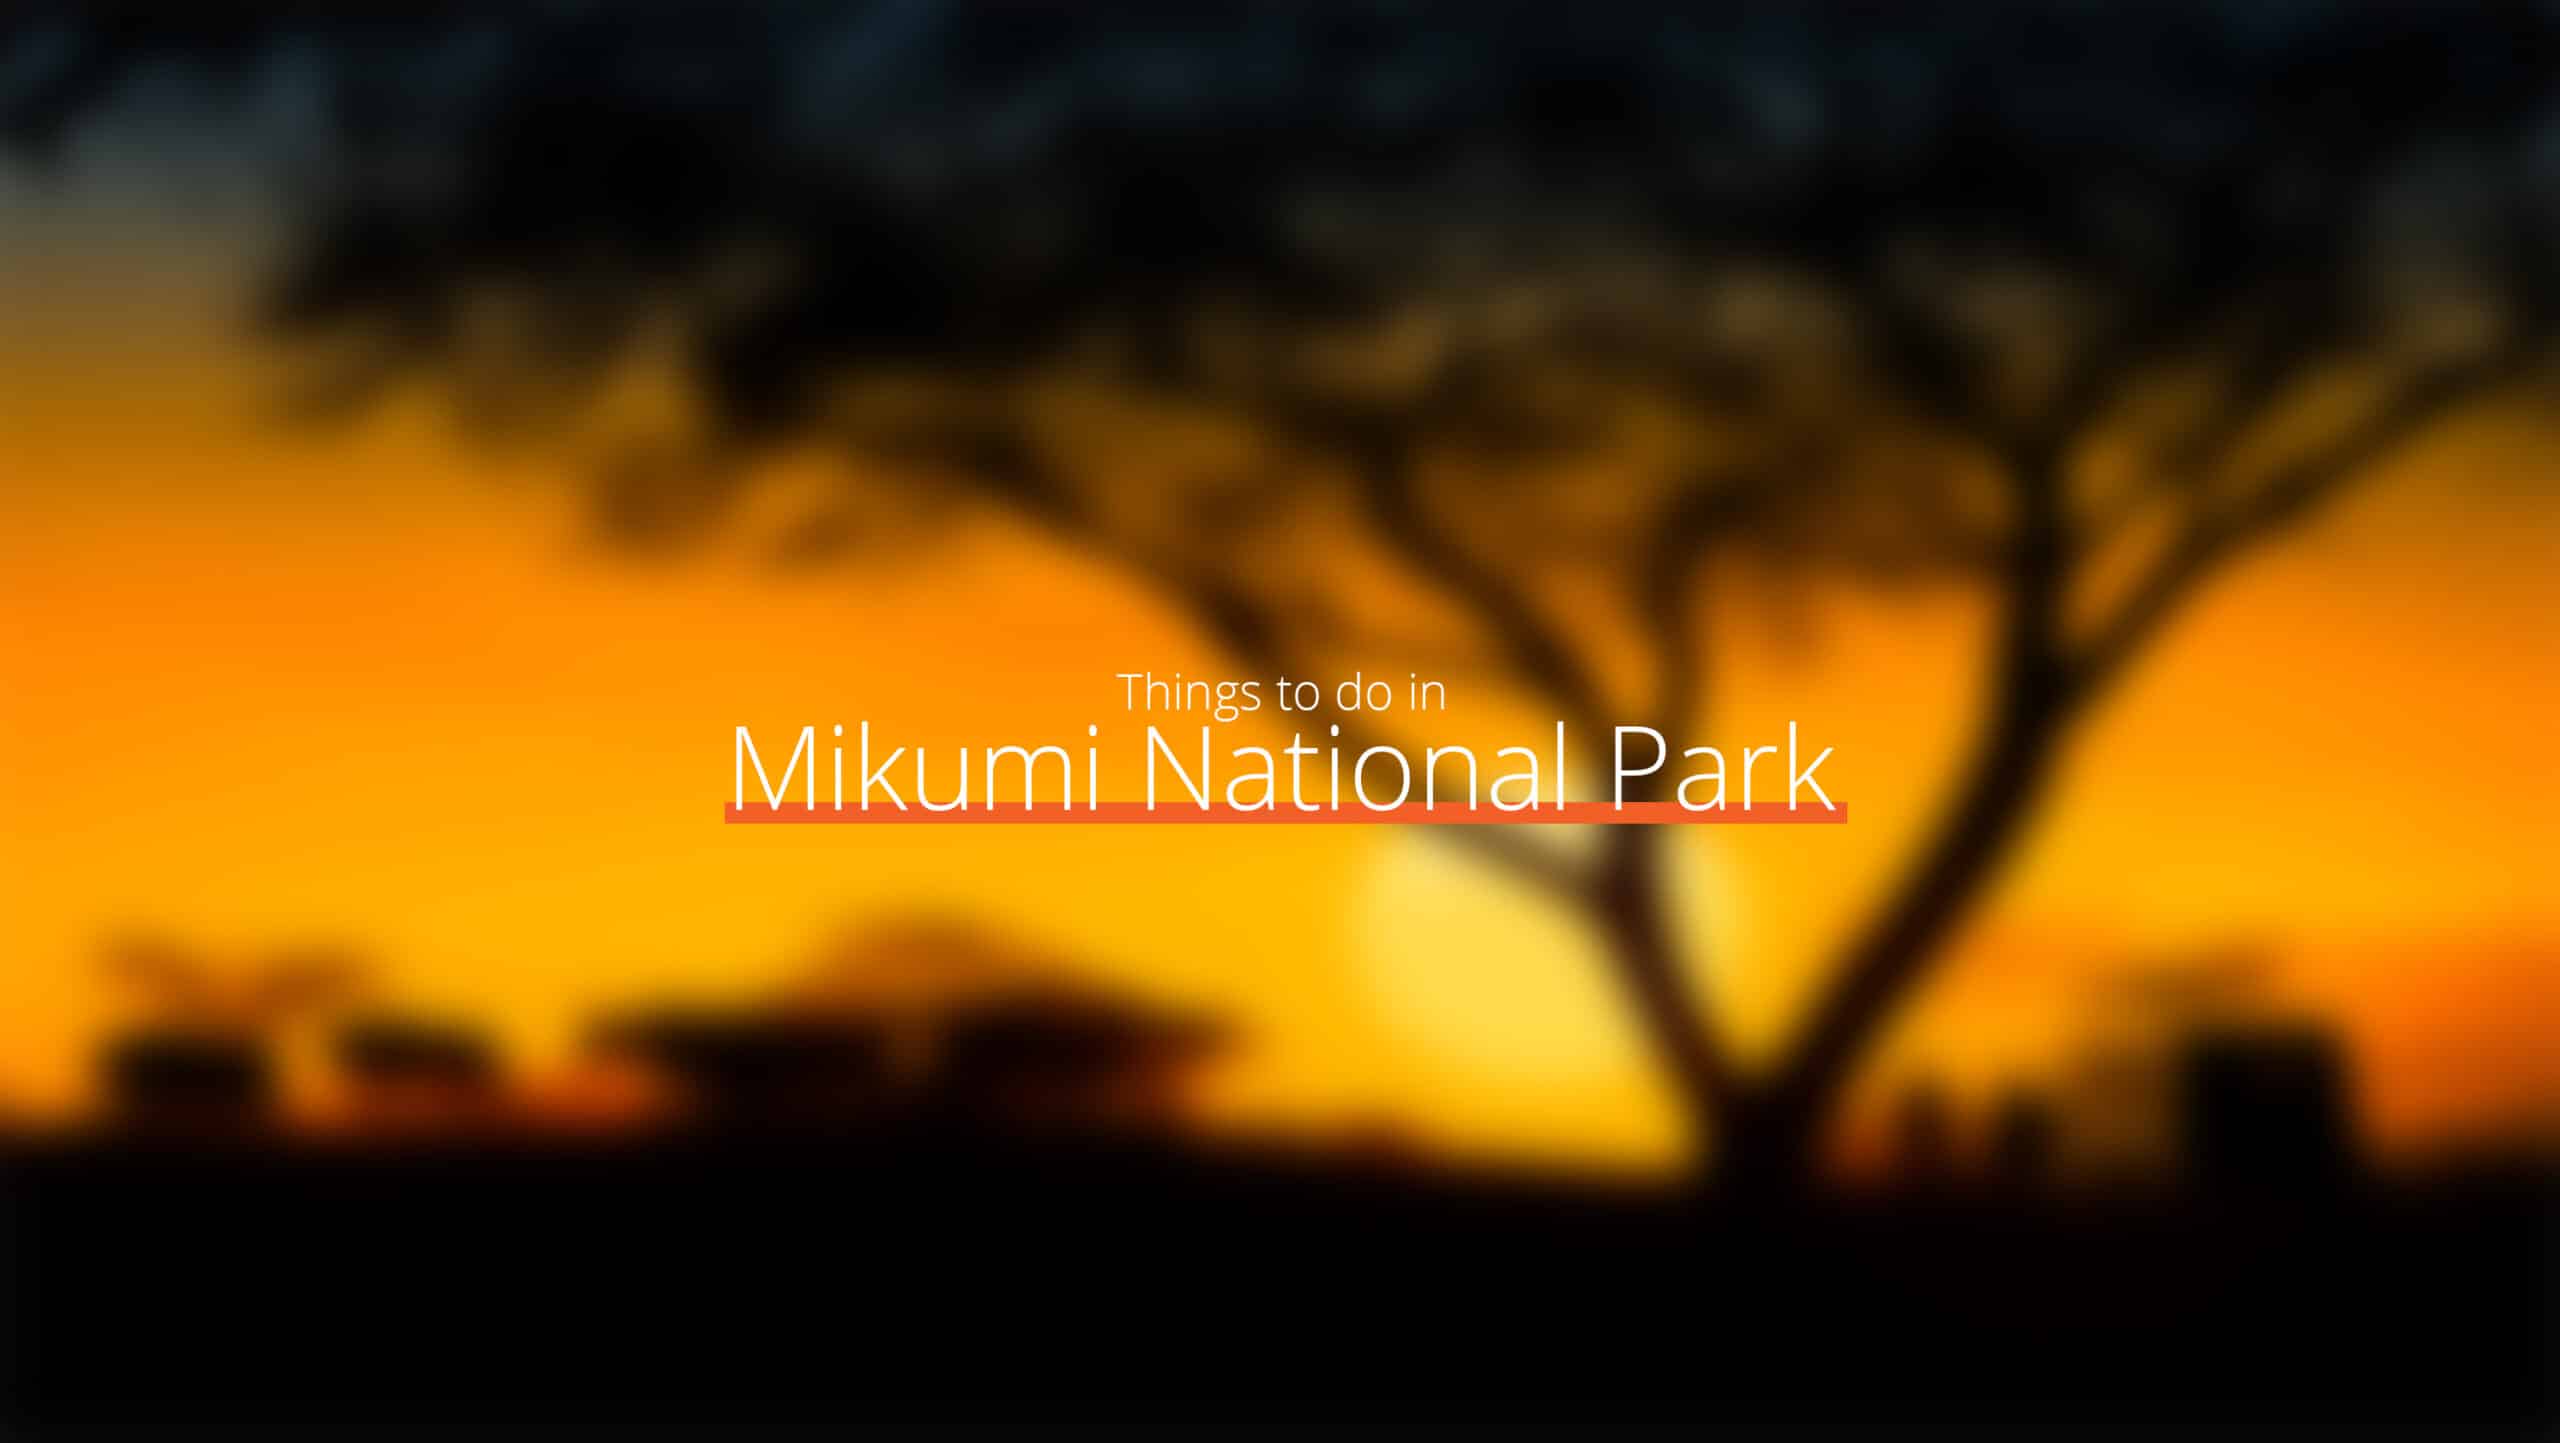 坦桑尼亚 - mikumi 国家公园 1 缩放 - 去哪里